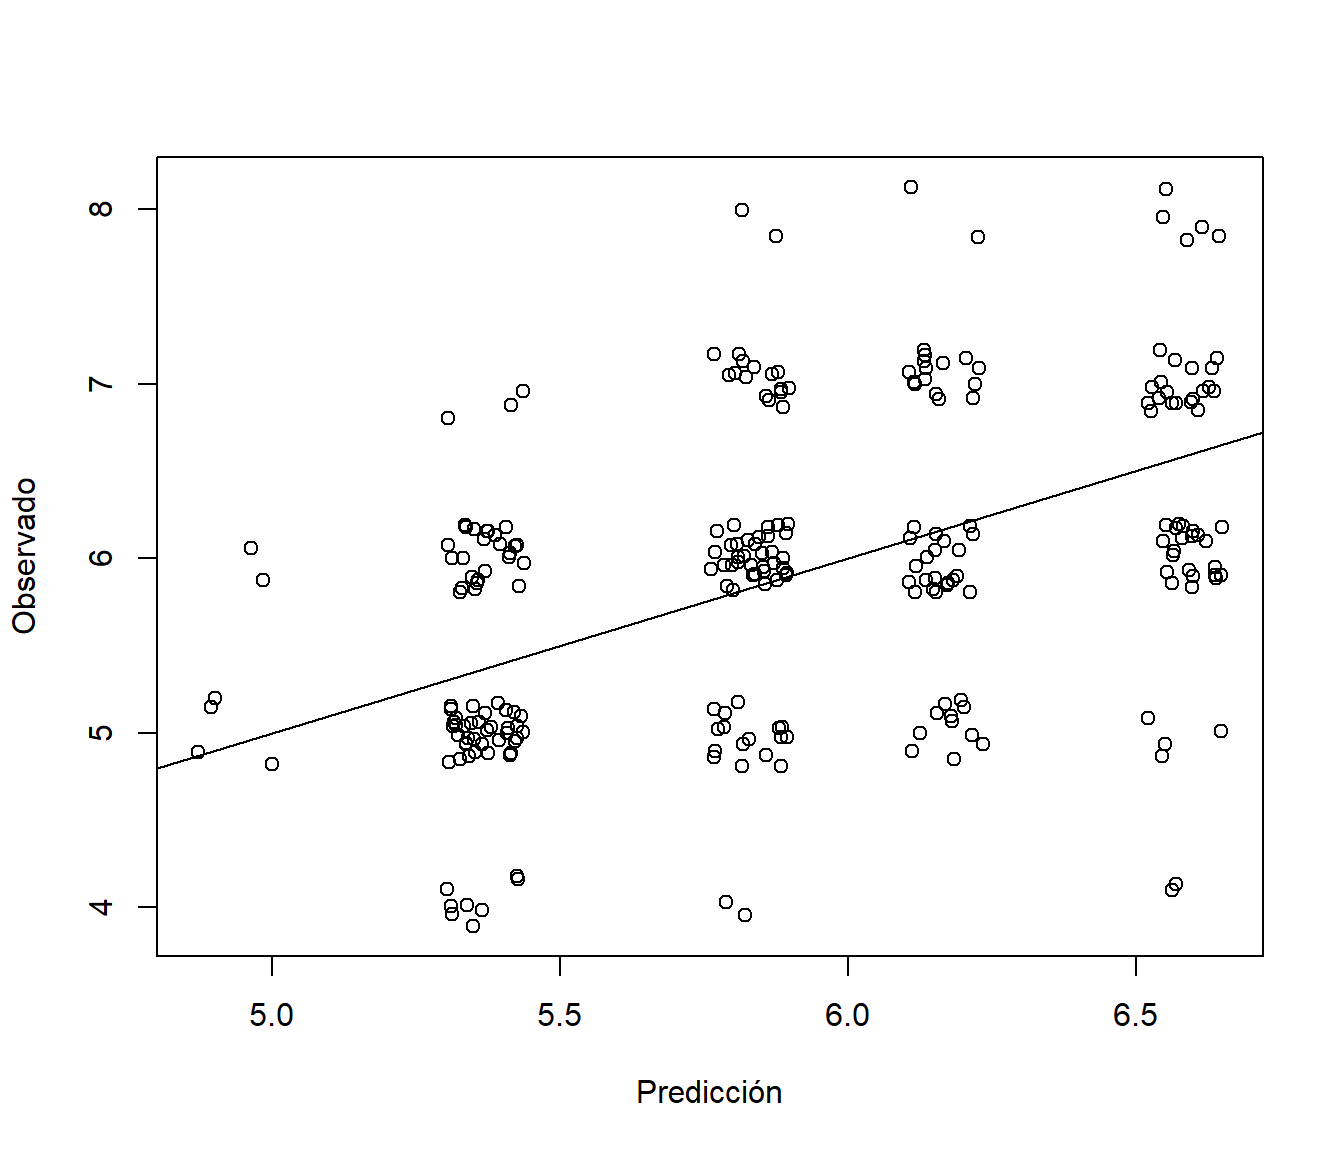 Gráfico de observaciones frente a predicciones (test$quality; se añade una perturbación para mostrar la distribución de los valores)